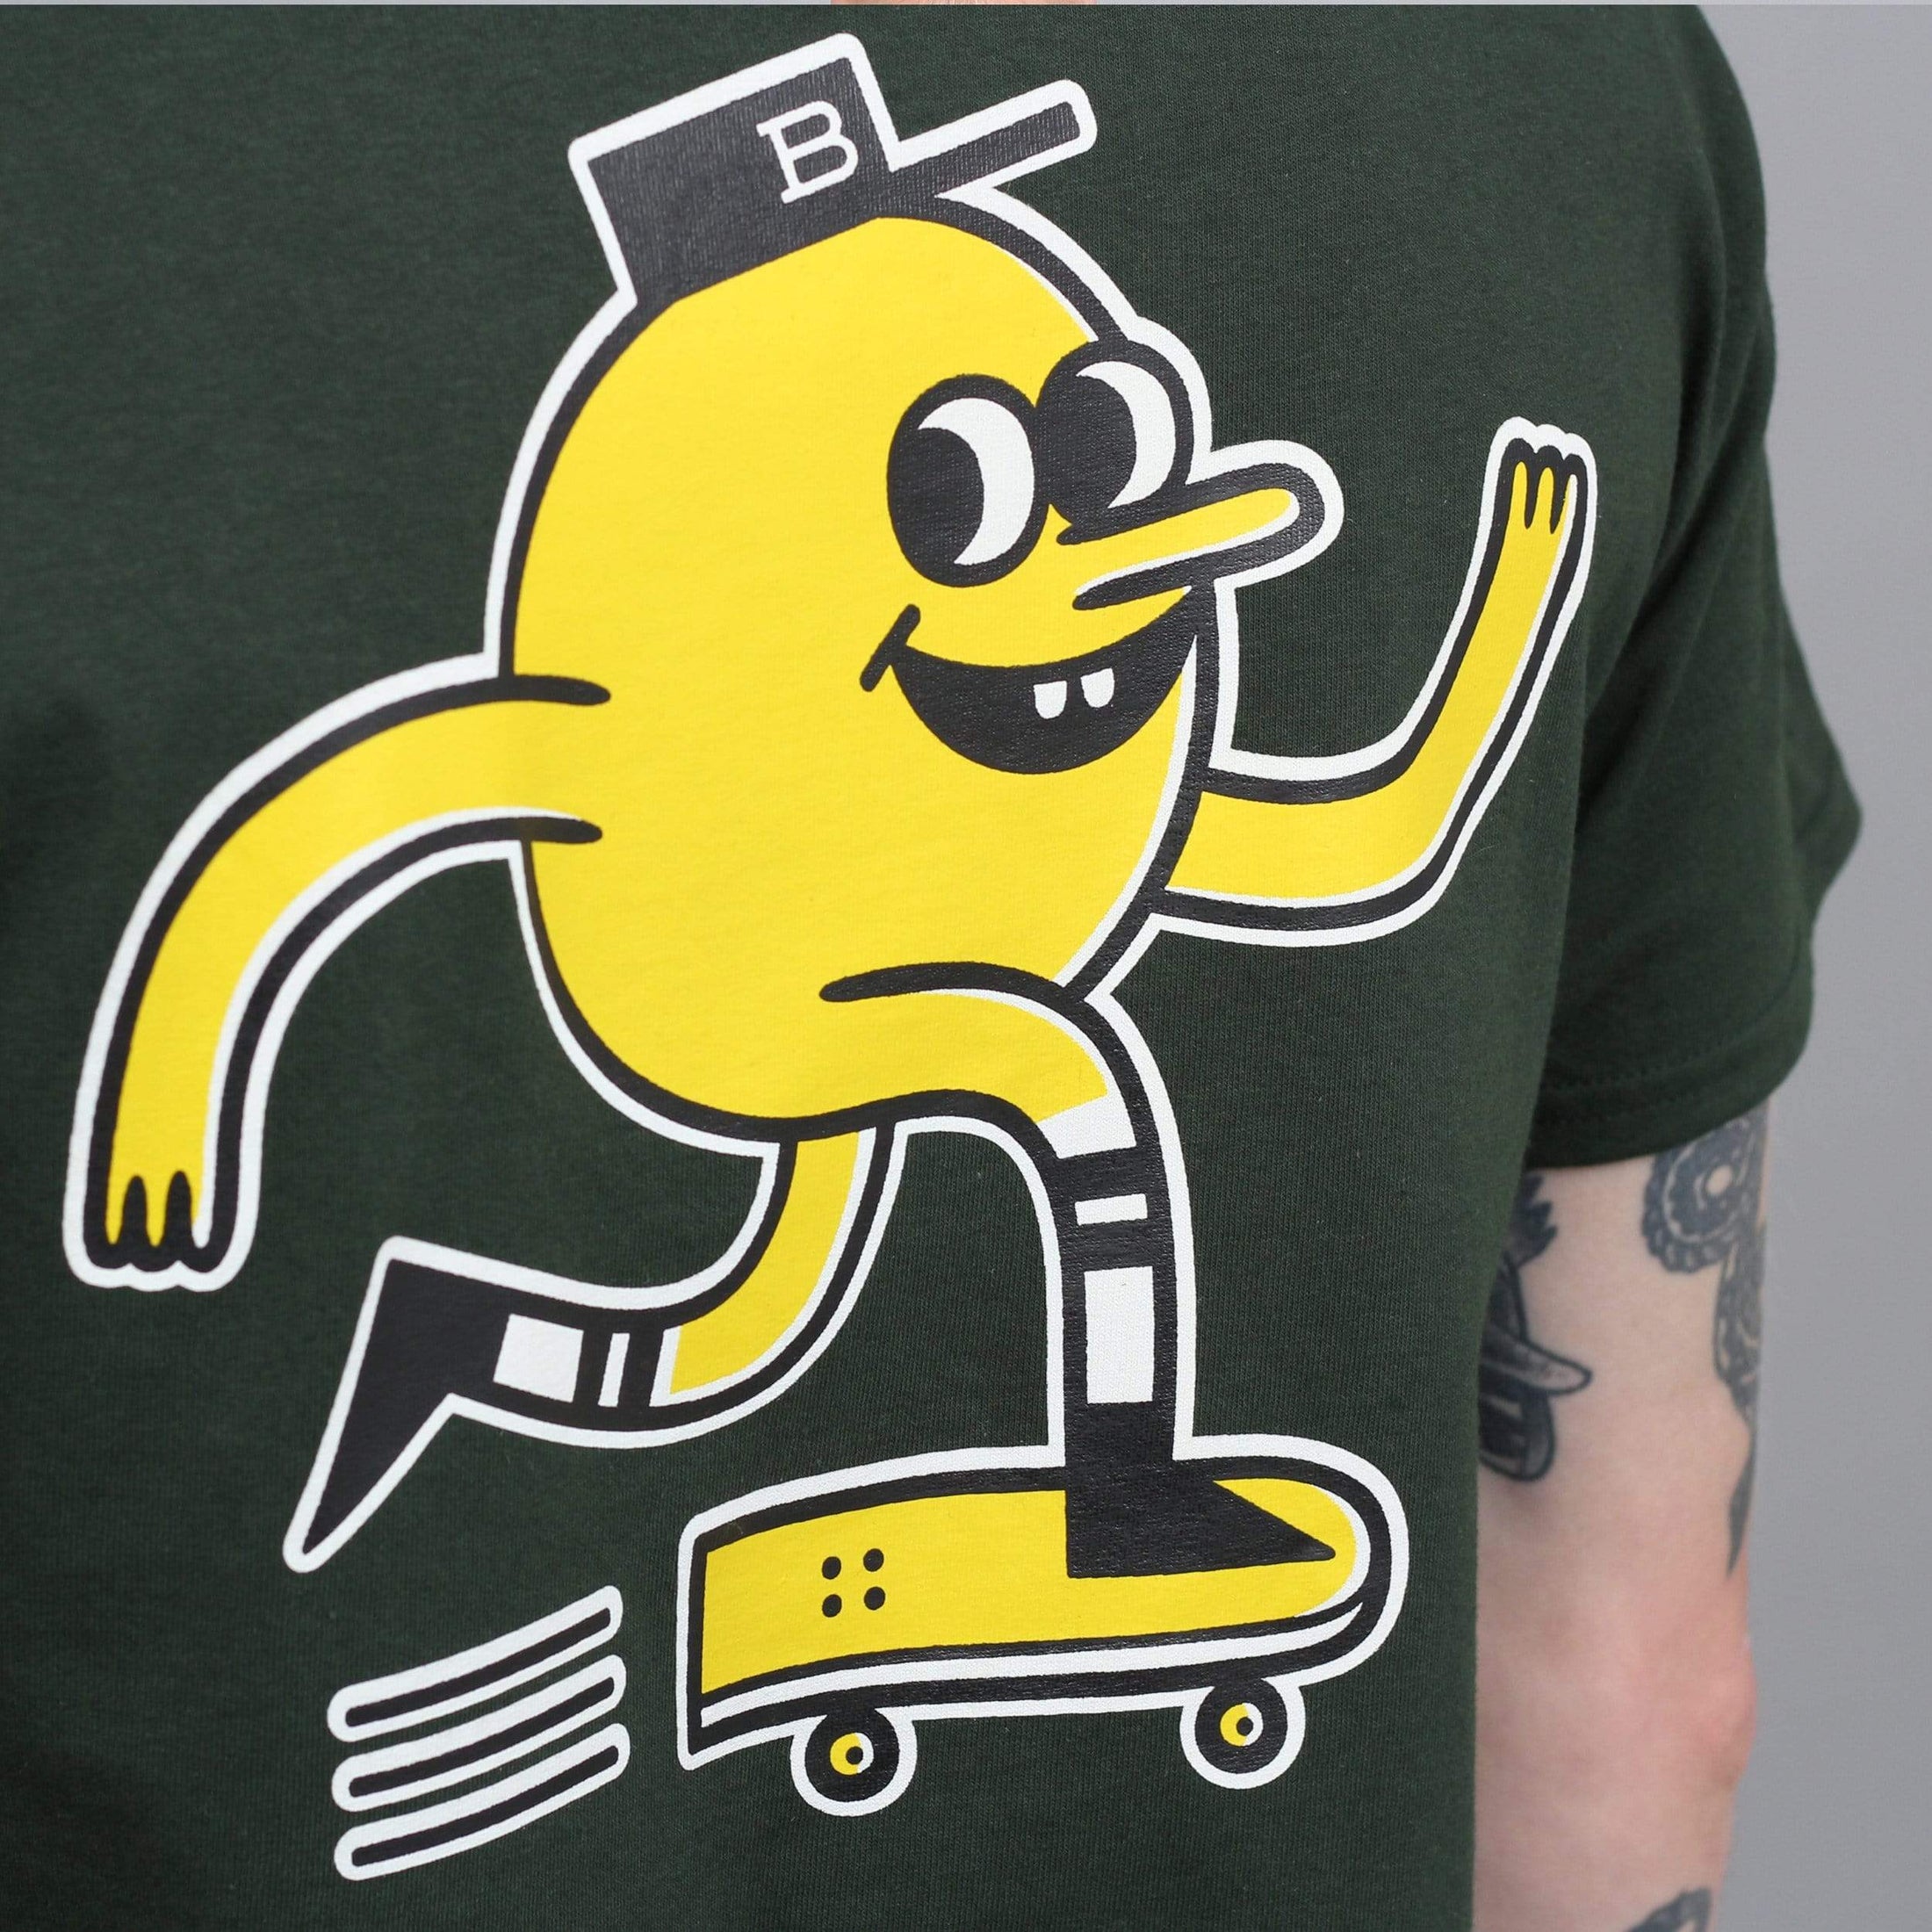 Blast Skates Mascot Logo T-Shirt Forest Green